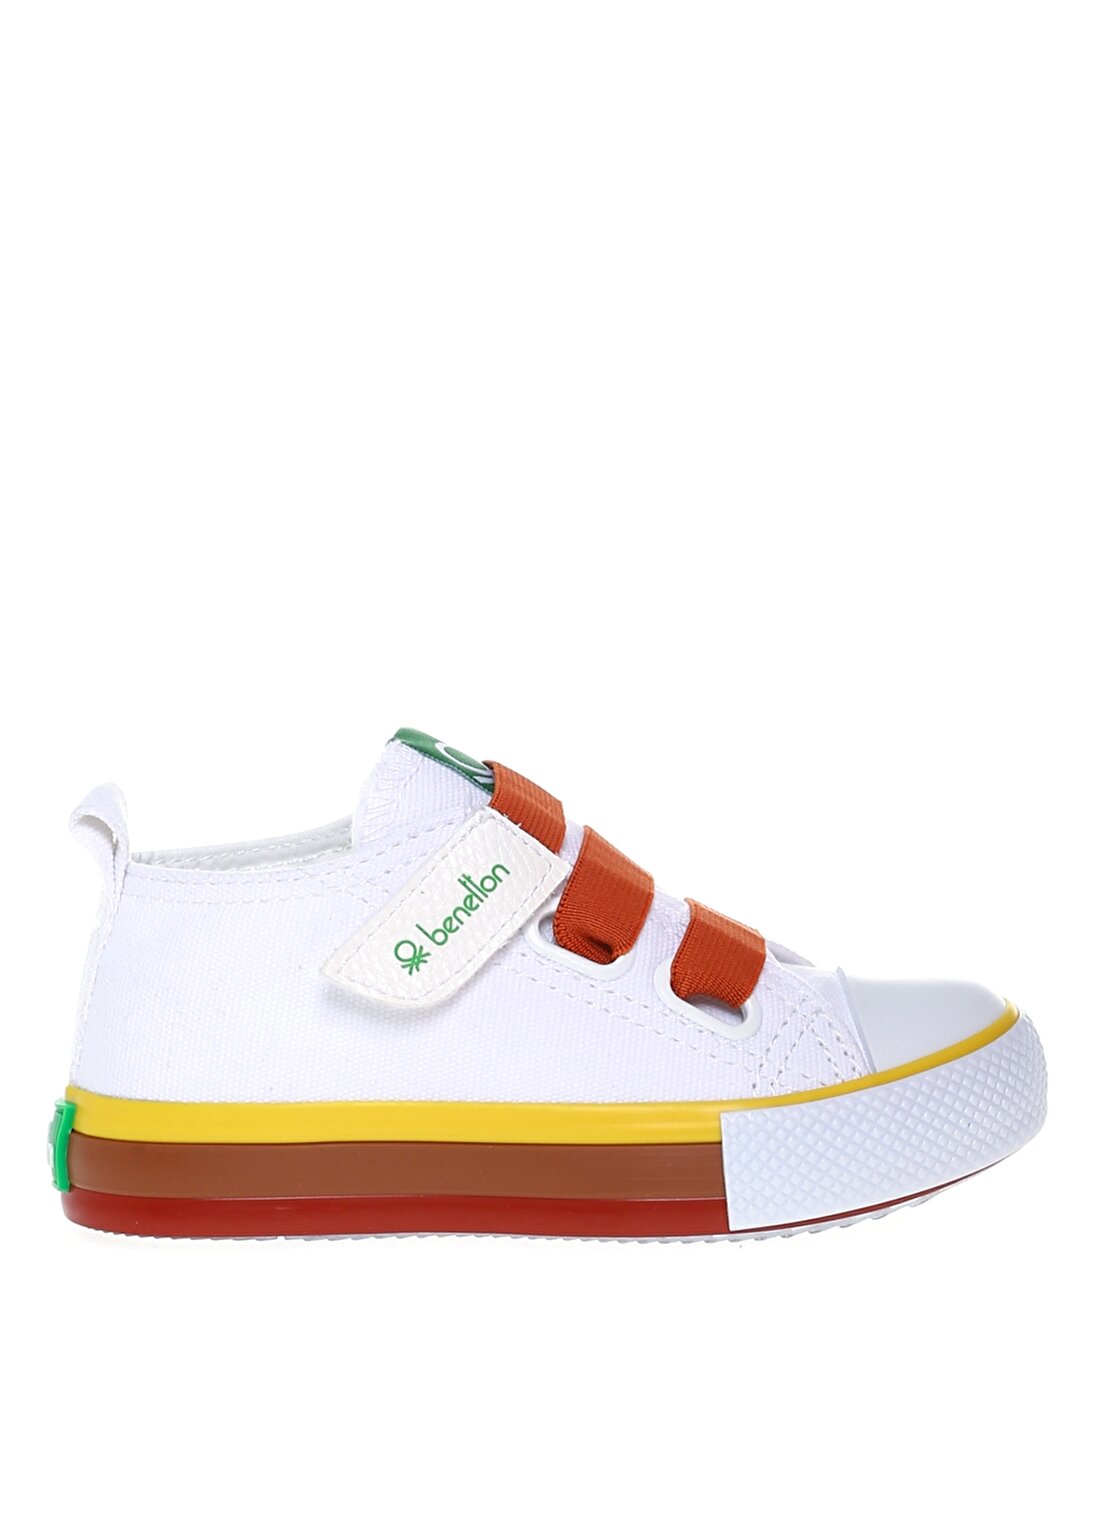 Benetton Beyaz - Turuncu Kız Çocuk Yürüyüş Ayakkabısı BN-30649 452--